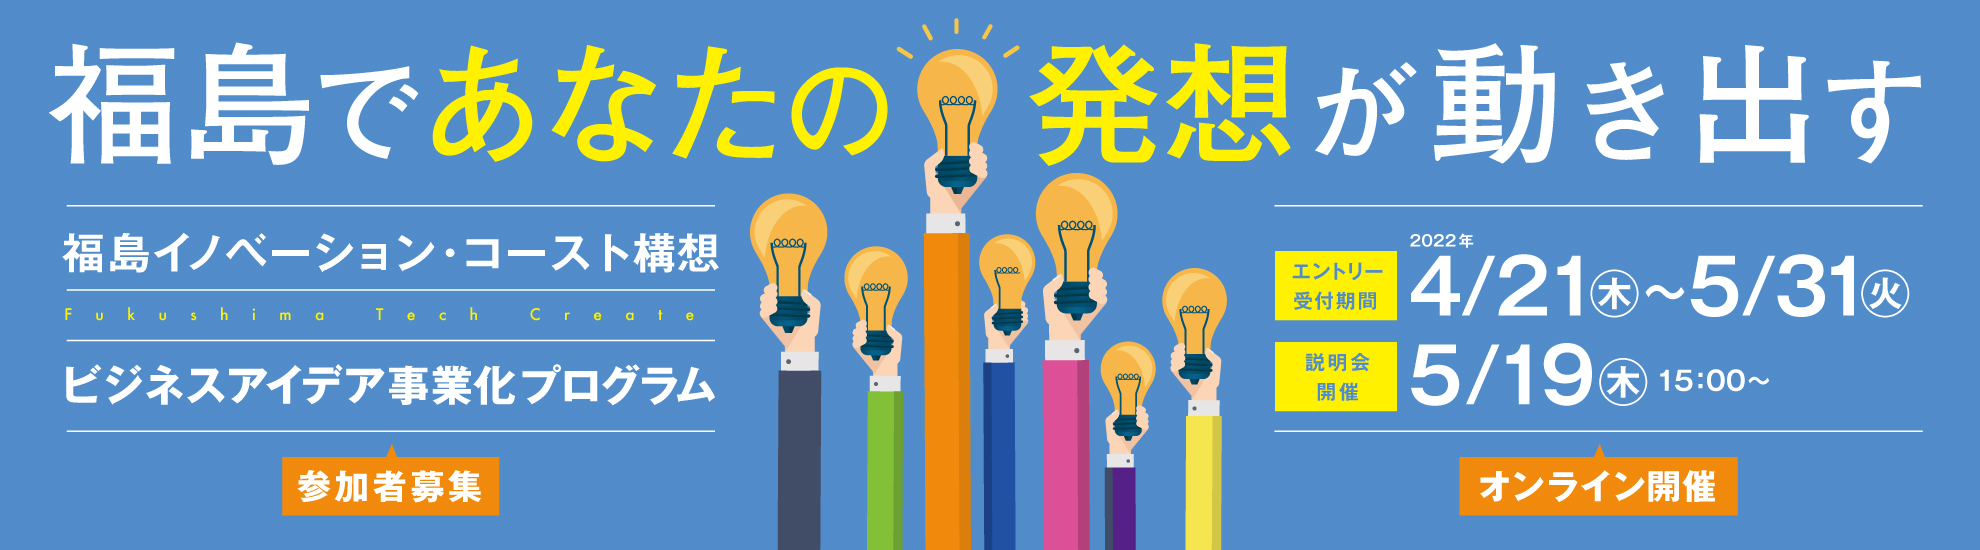 福島であなたの発送が動き出す 福島イノベーションコースト構想 ビジネスアイデア事業化プログラム